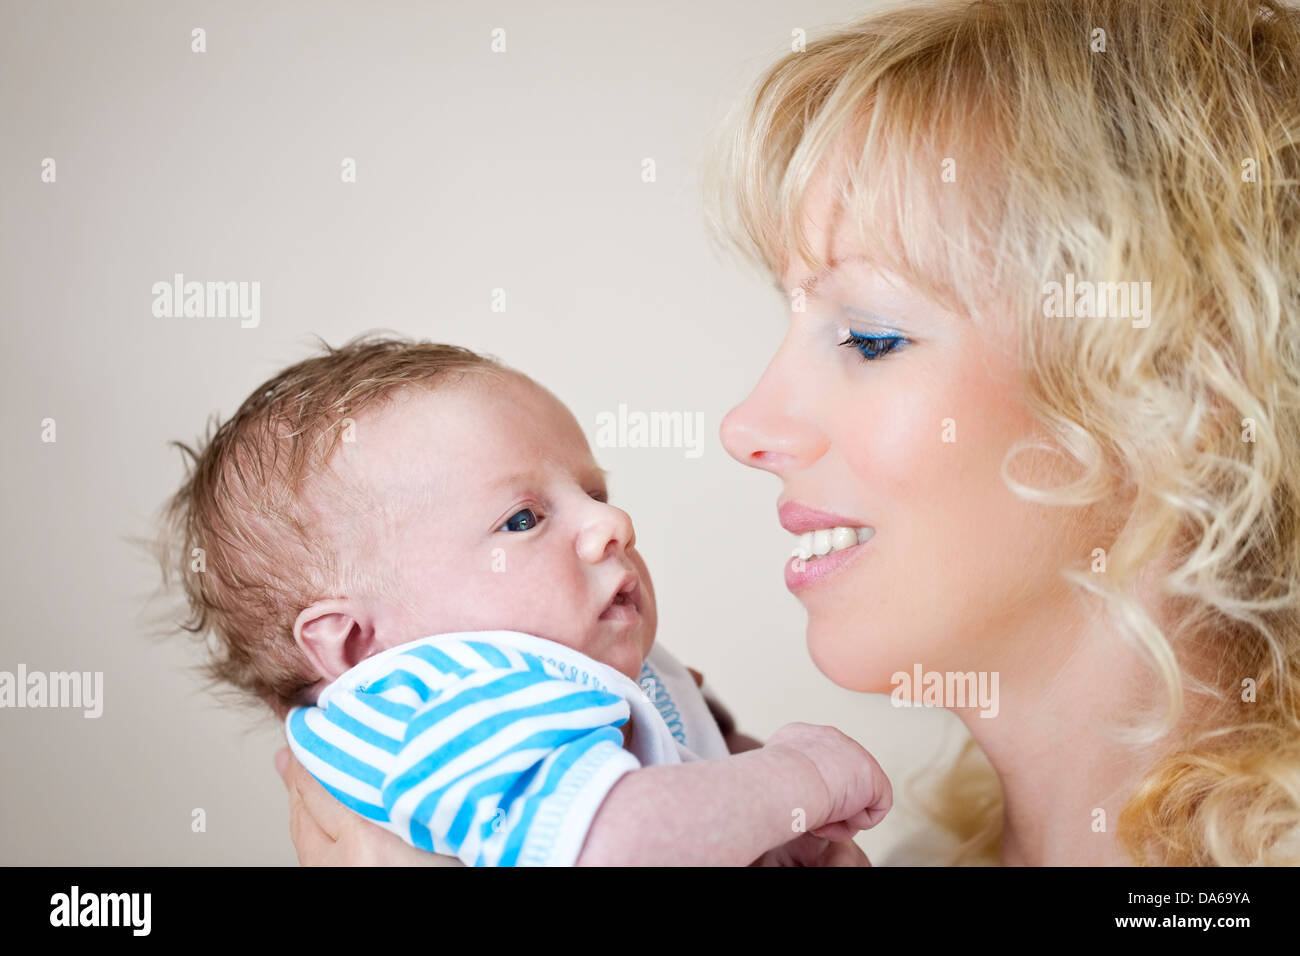 Jeune femme tenant un bébé nouveau-né Banque D'Images